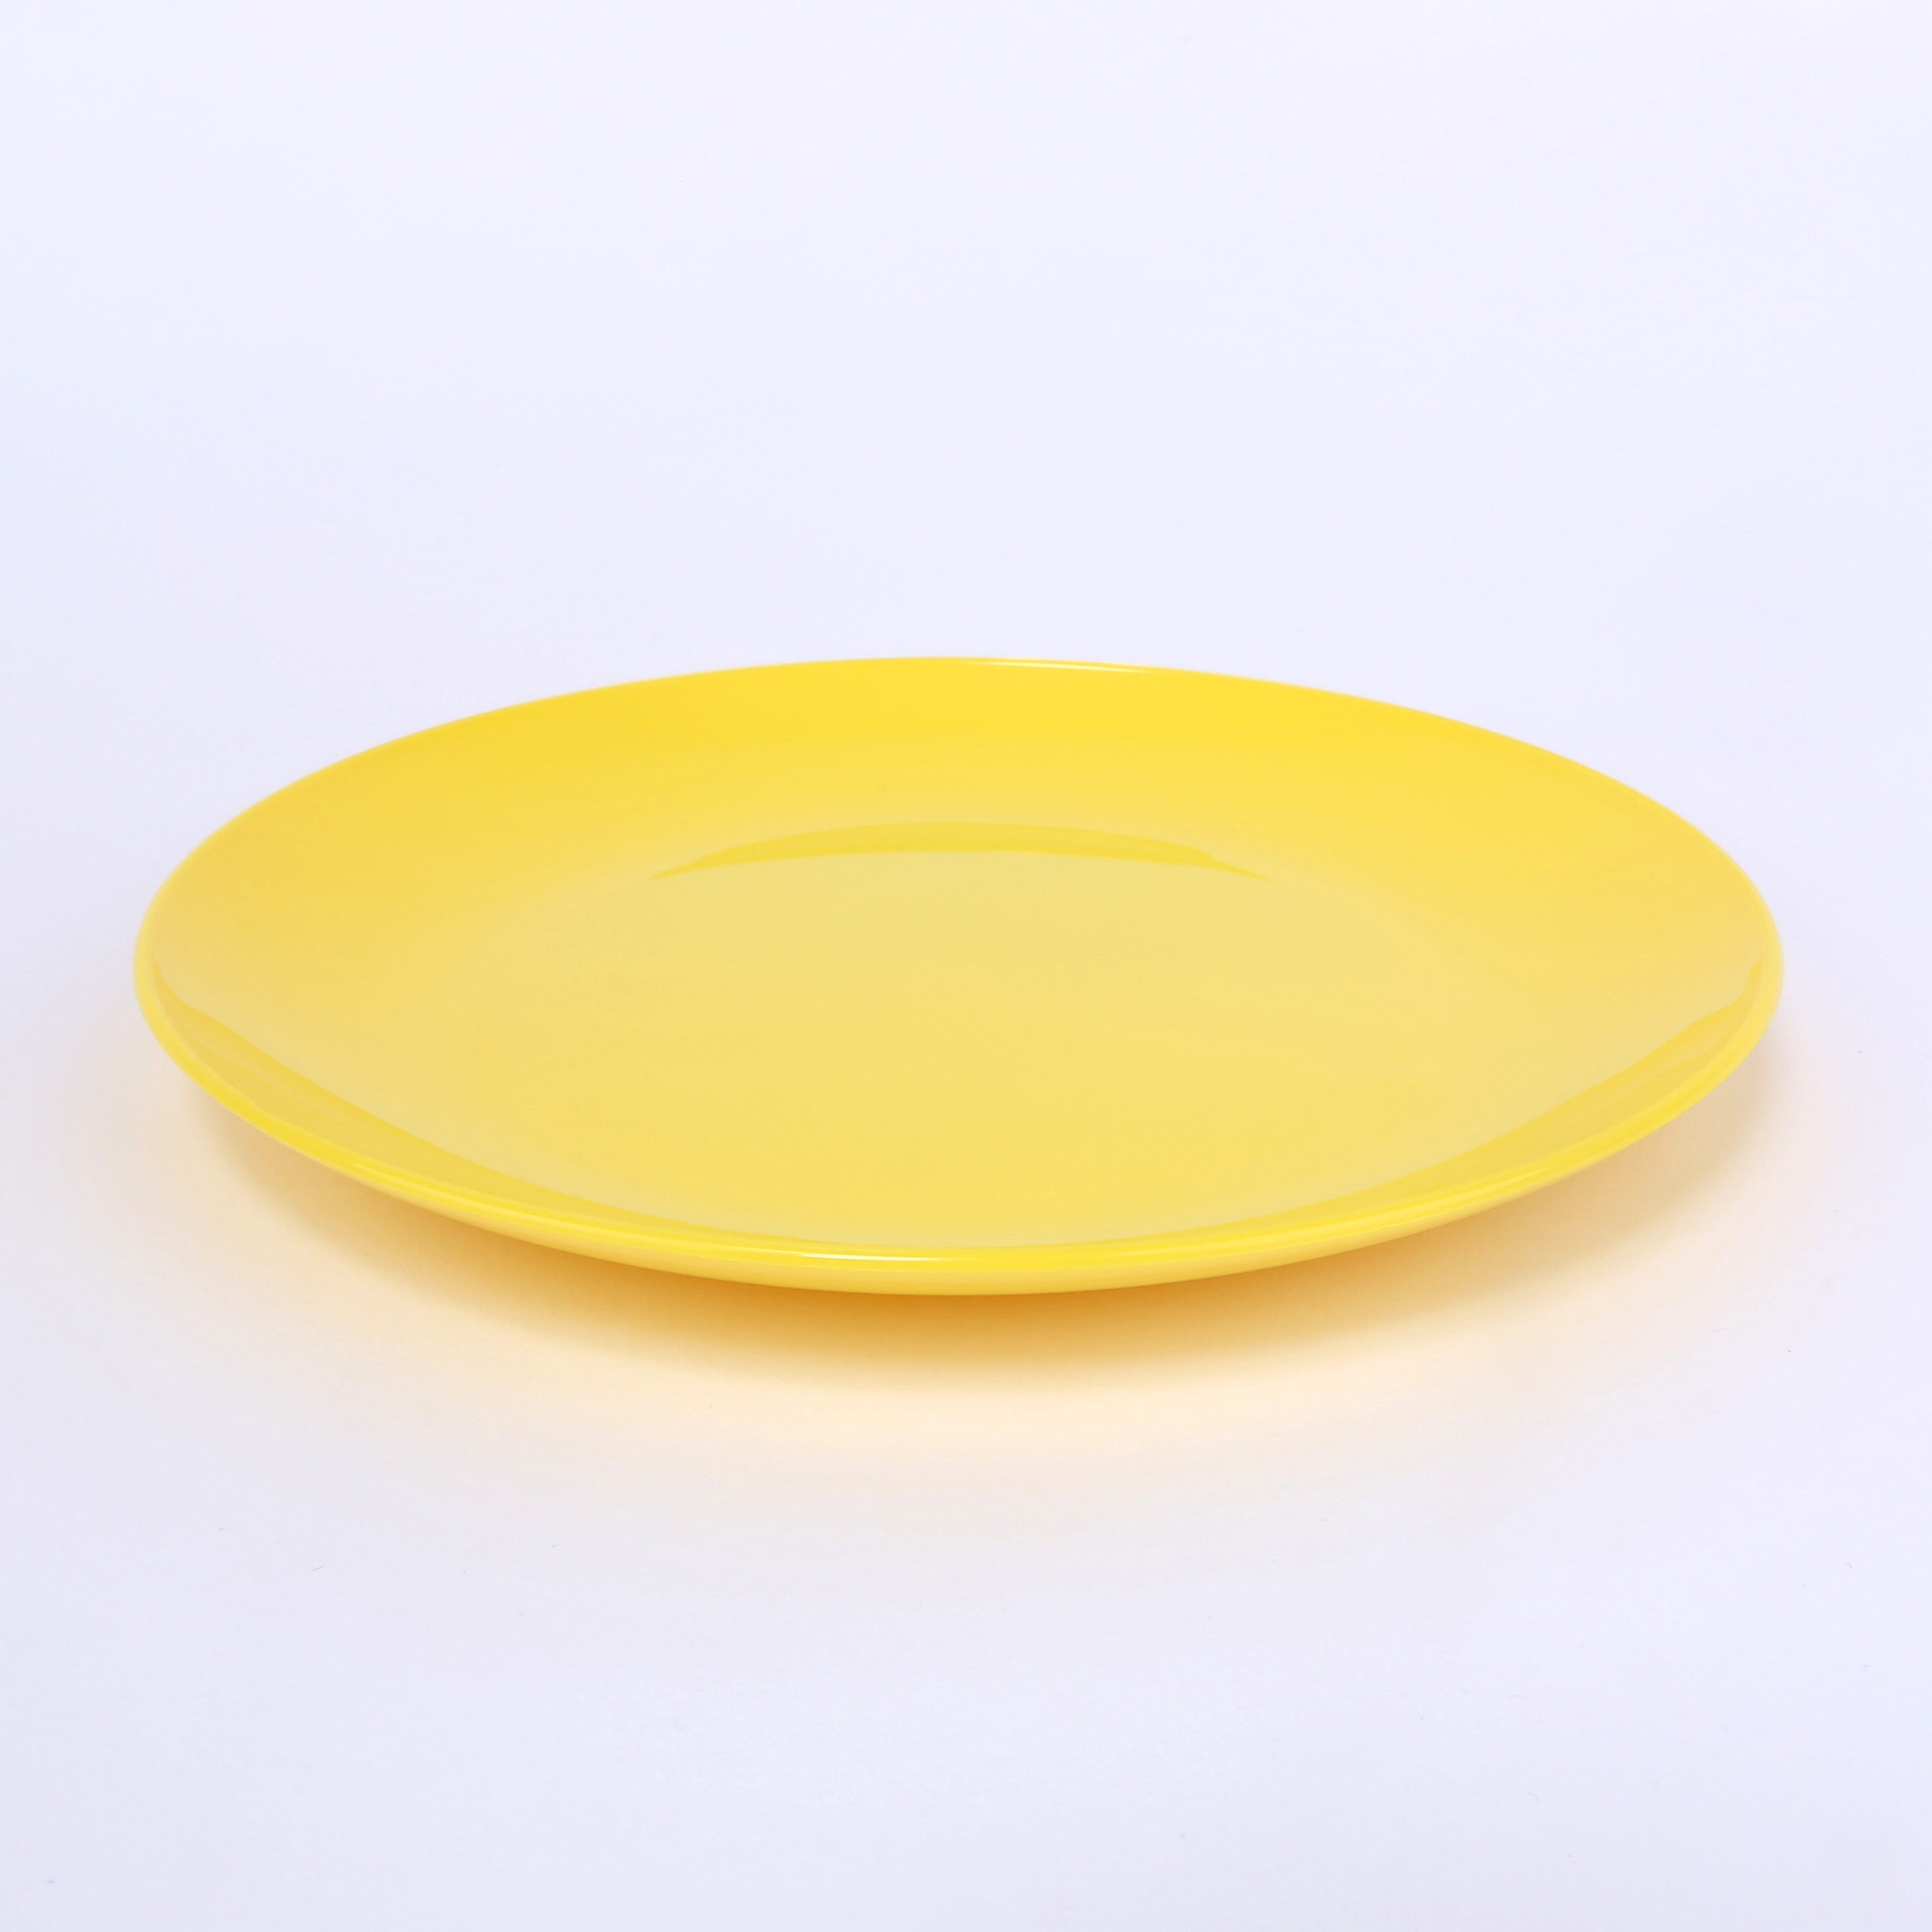 vaLon Zephyr Dessertteller 19 cm aus schadstofffreiem Kunststoff in der Farbe sonnengelb.